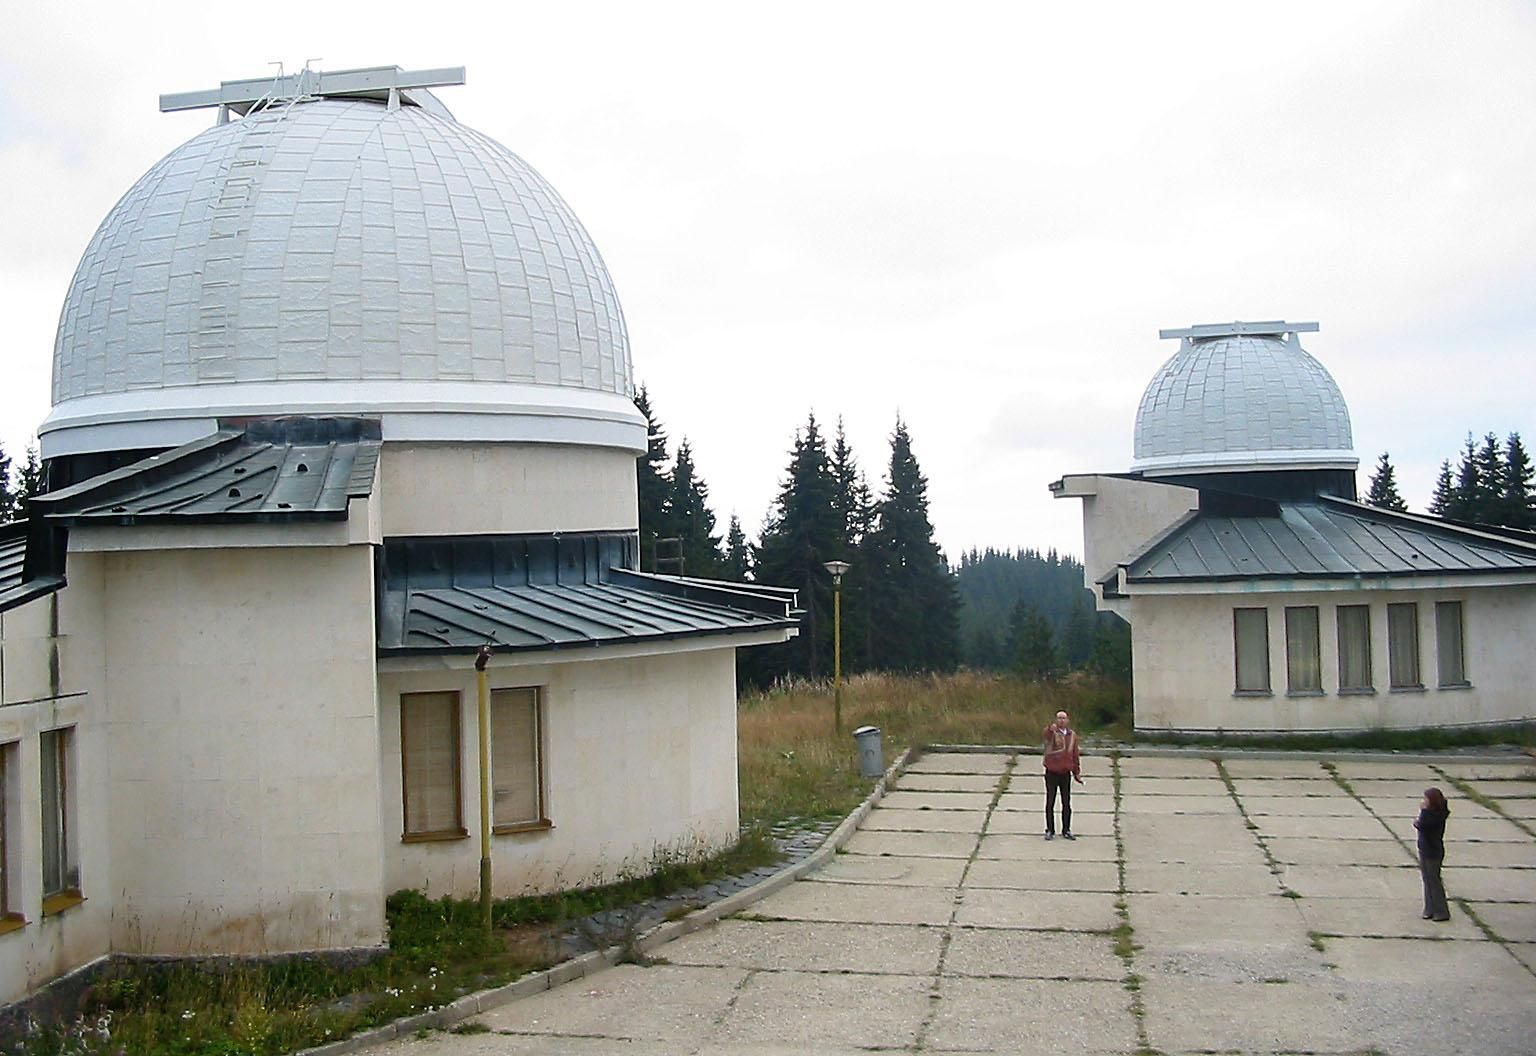 Финансова инжекция за обсерваторията в Рожен от държавата